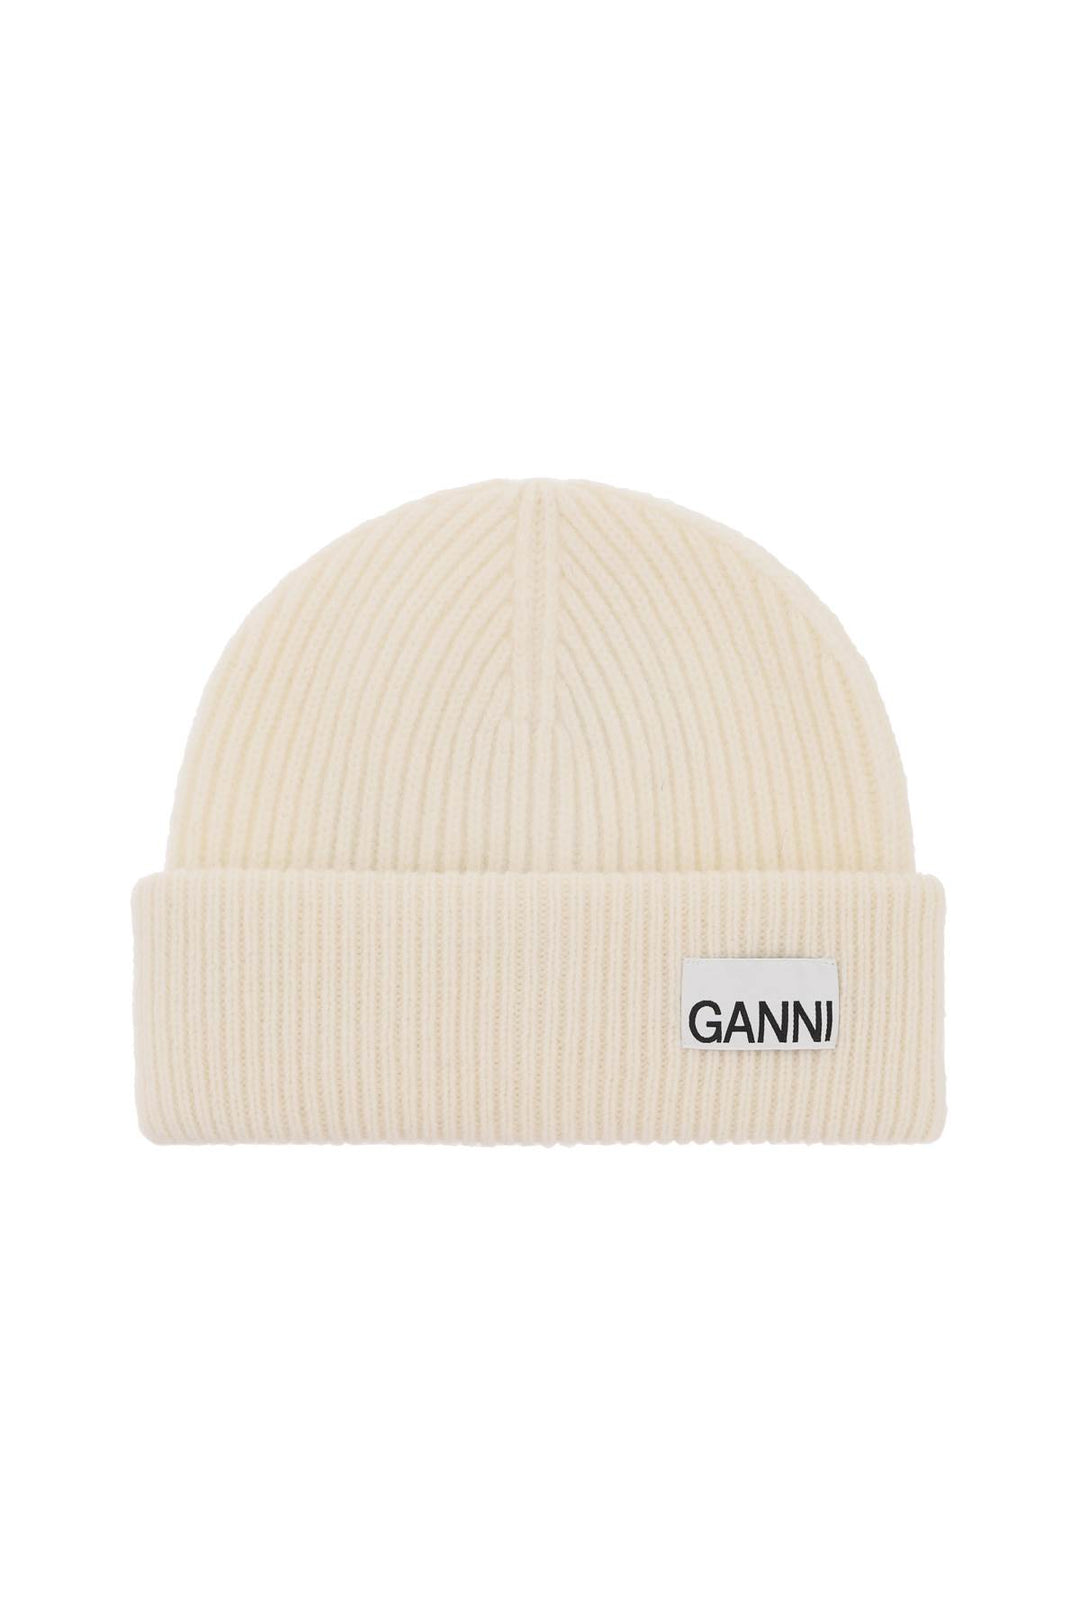 Cappello Beanie Con Etichetta Logo - Ganni - Donna